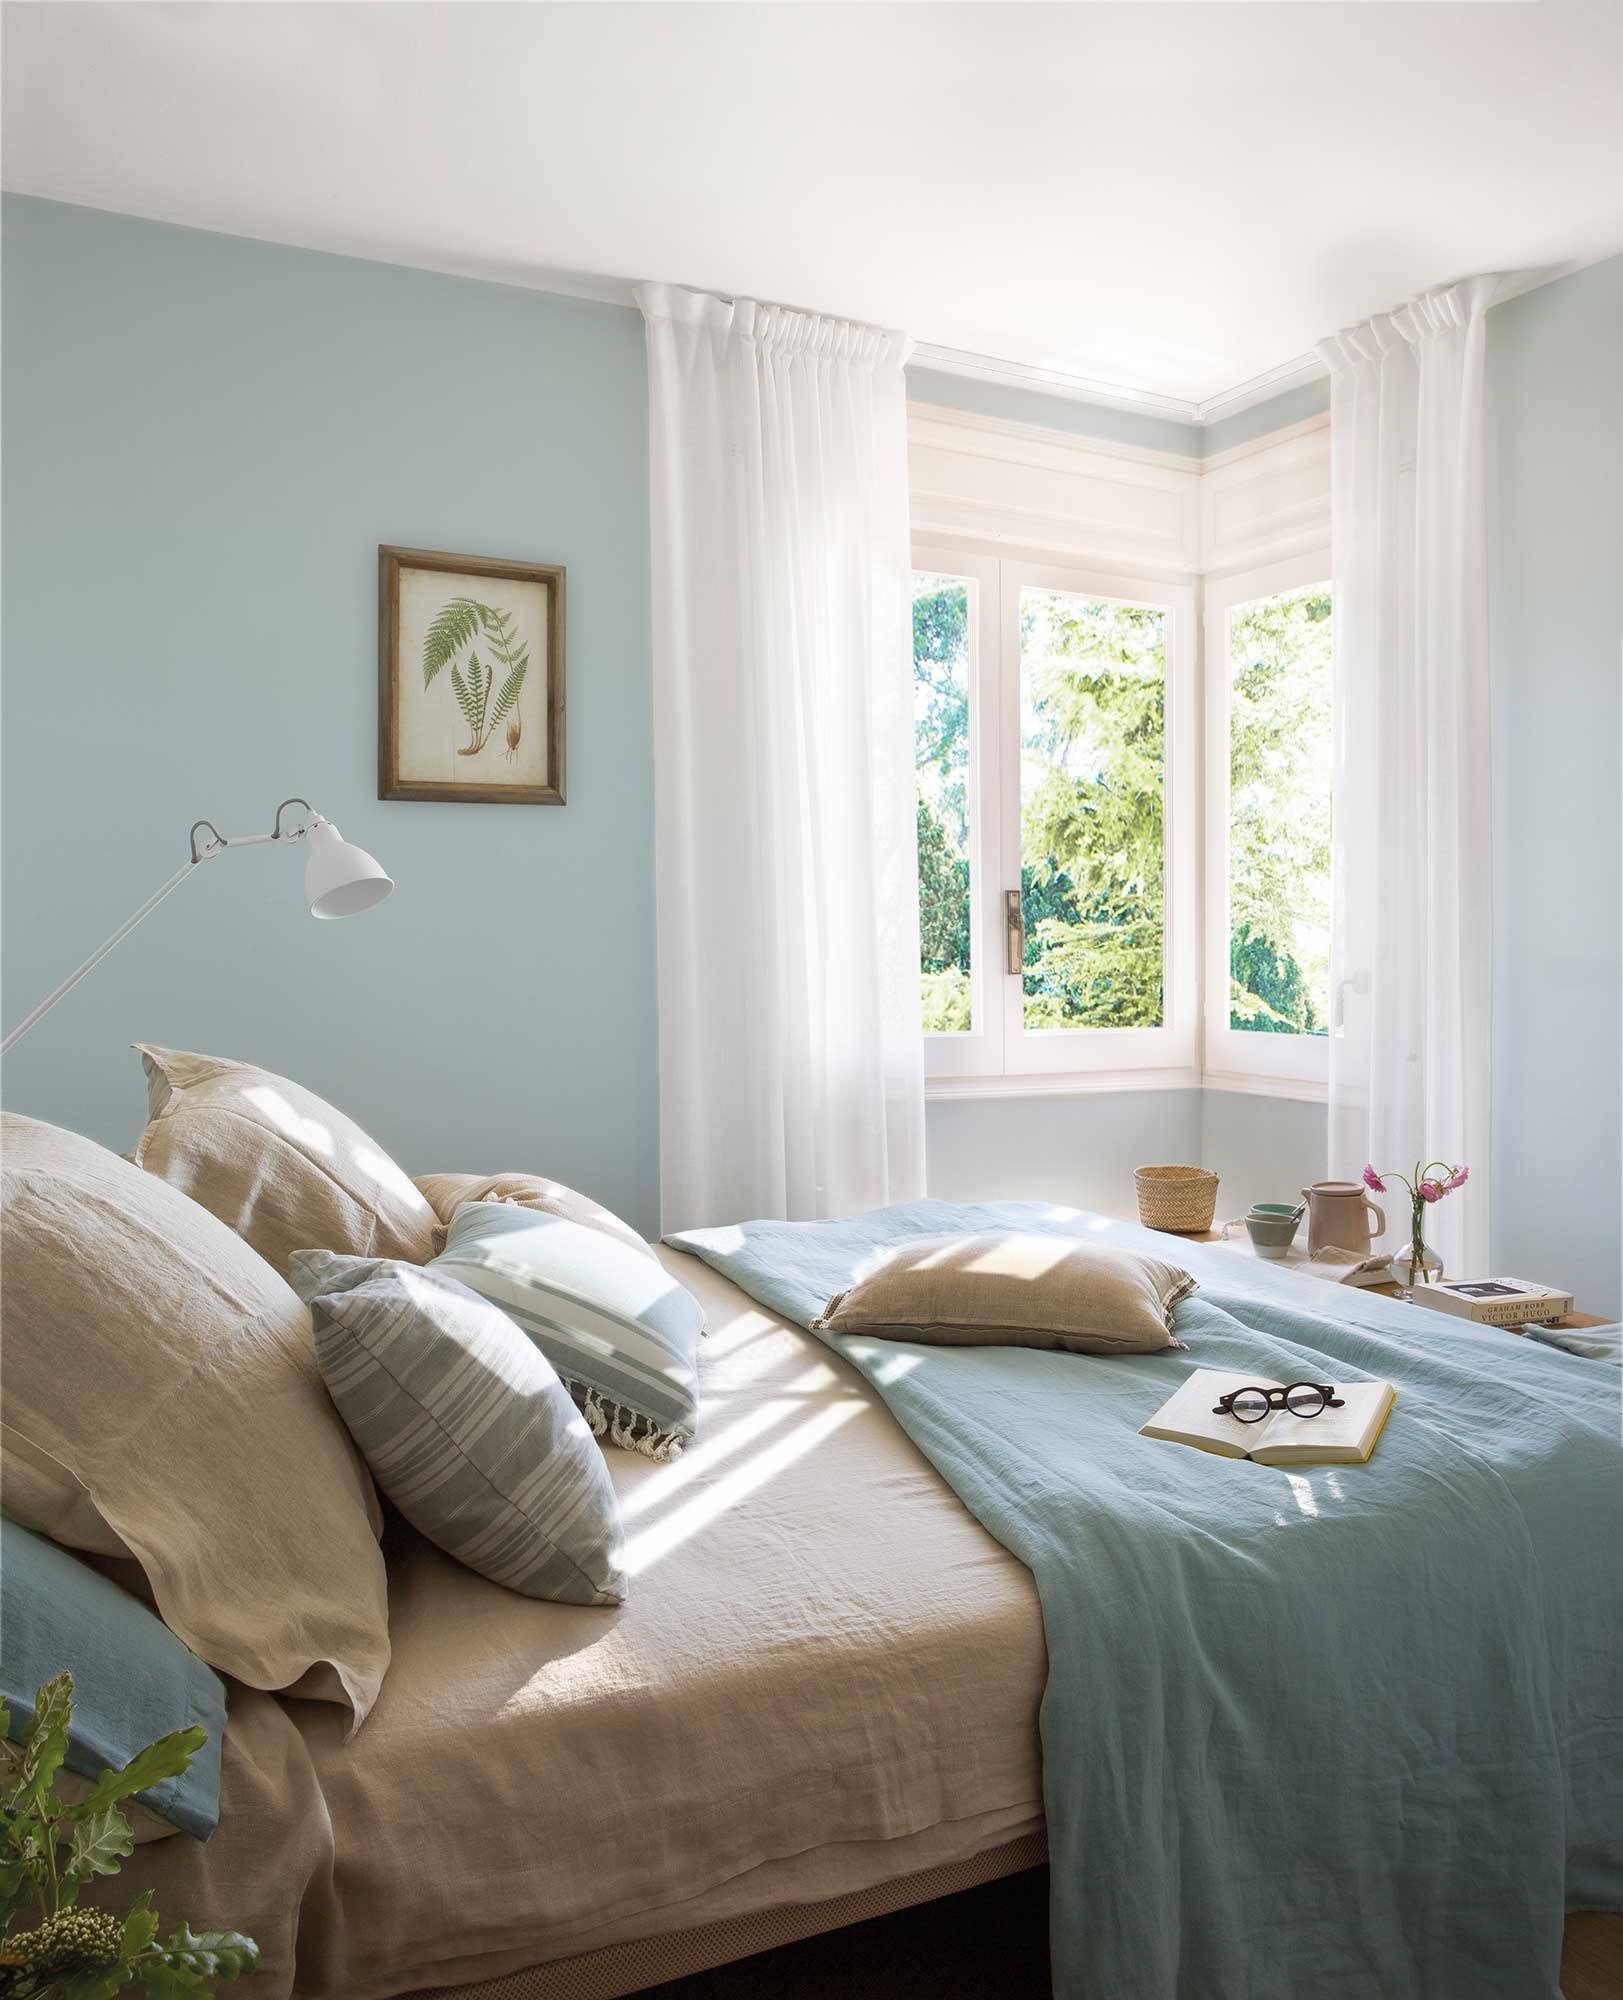 Dormitorio azul celeste con cortinas vaporosas.